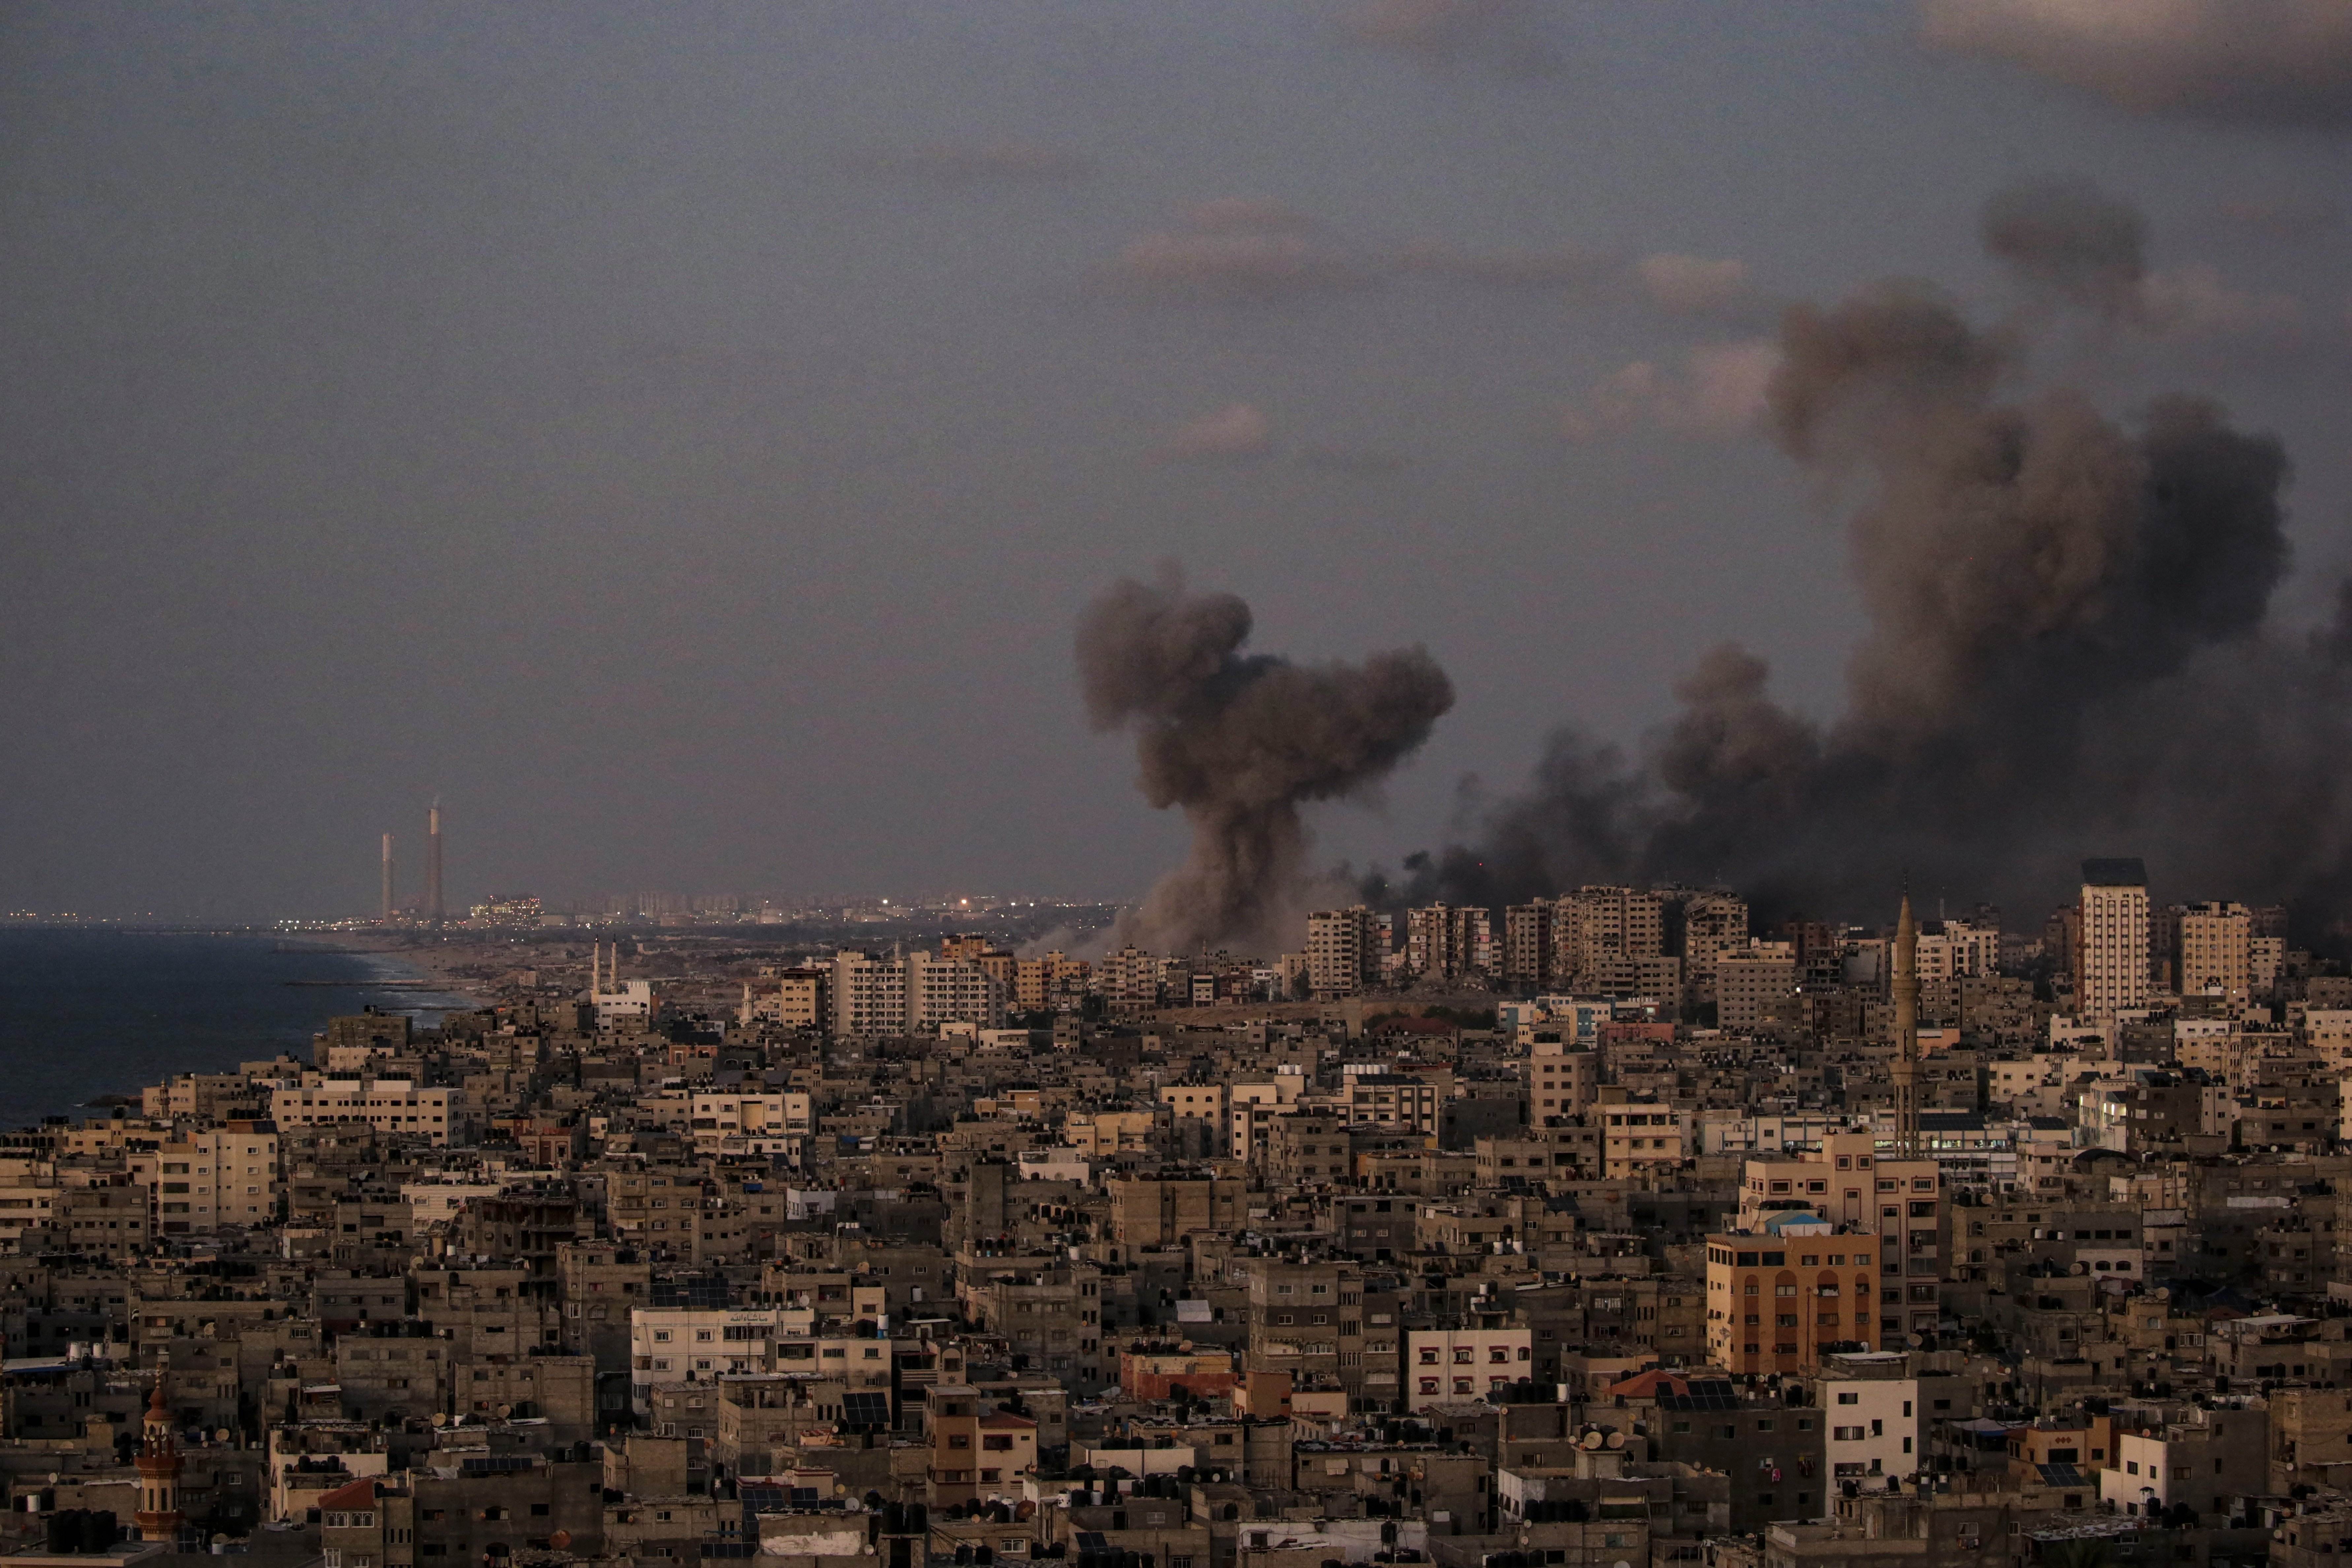 La UE, preocupada: posible llamamiento a un "viernes de ira" por parte de Hamás